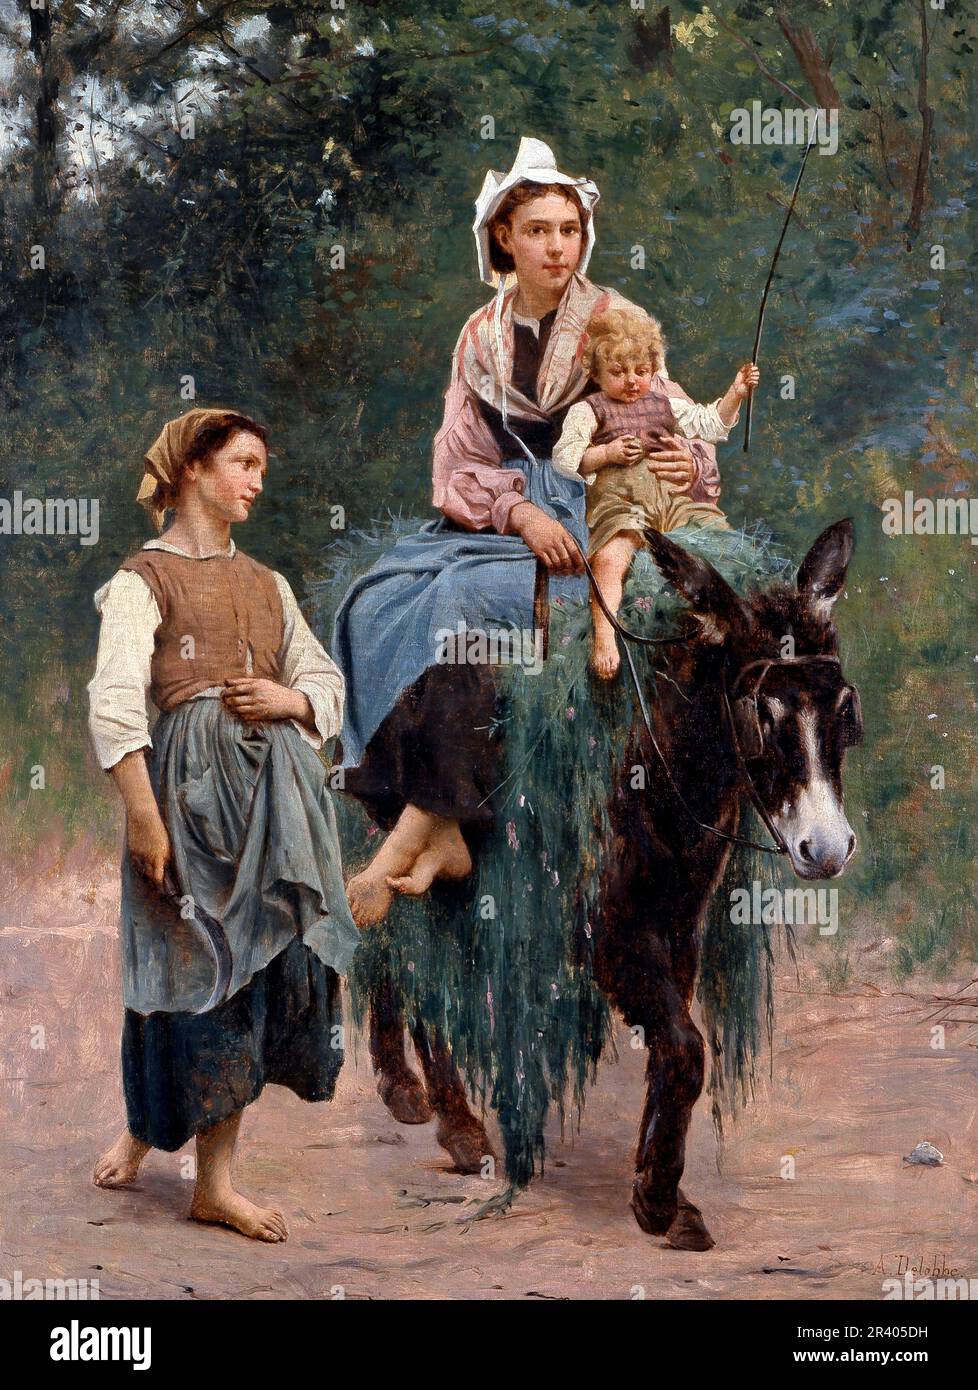 Famille paysanne italienne par le peintre naturaliste français François-Alfred Delobbe (1835-1920), huile sur toile Banque D'Images